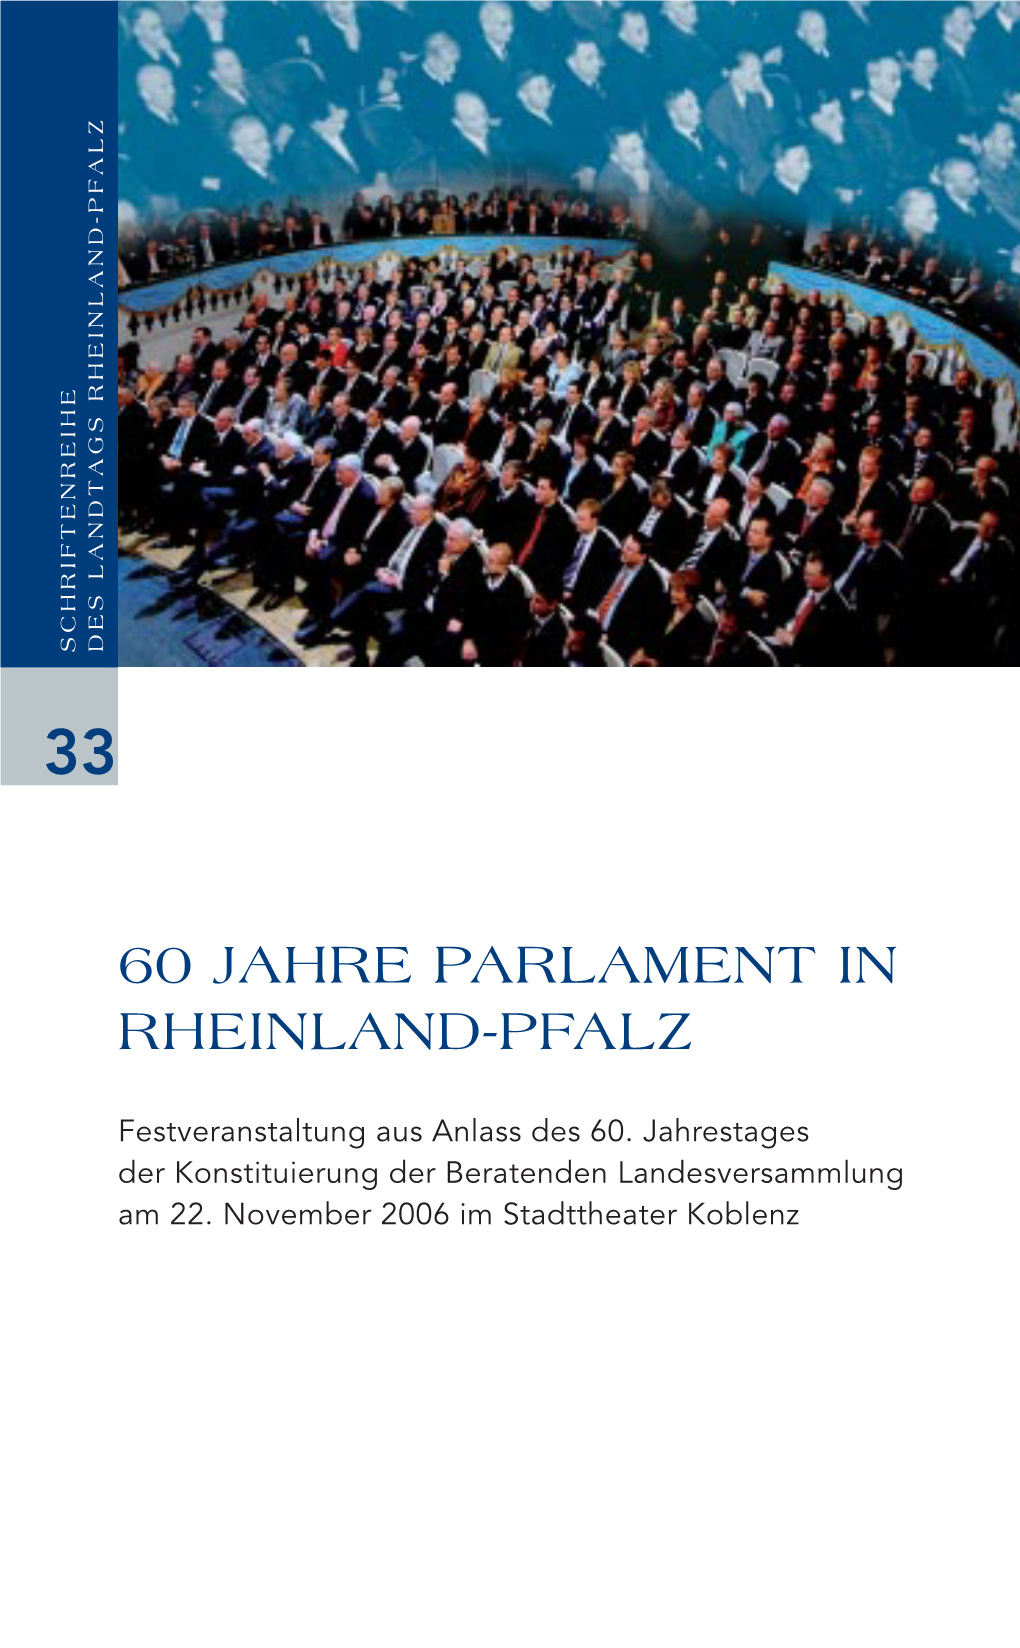 60 Jahre Parlament in Rheinland-Pfalz